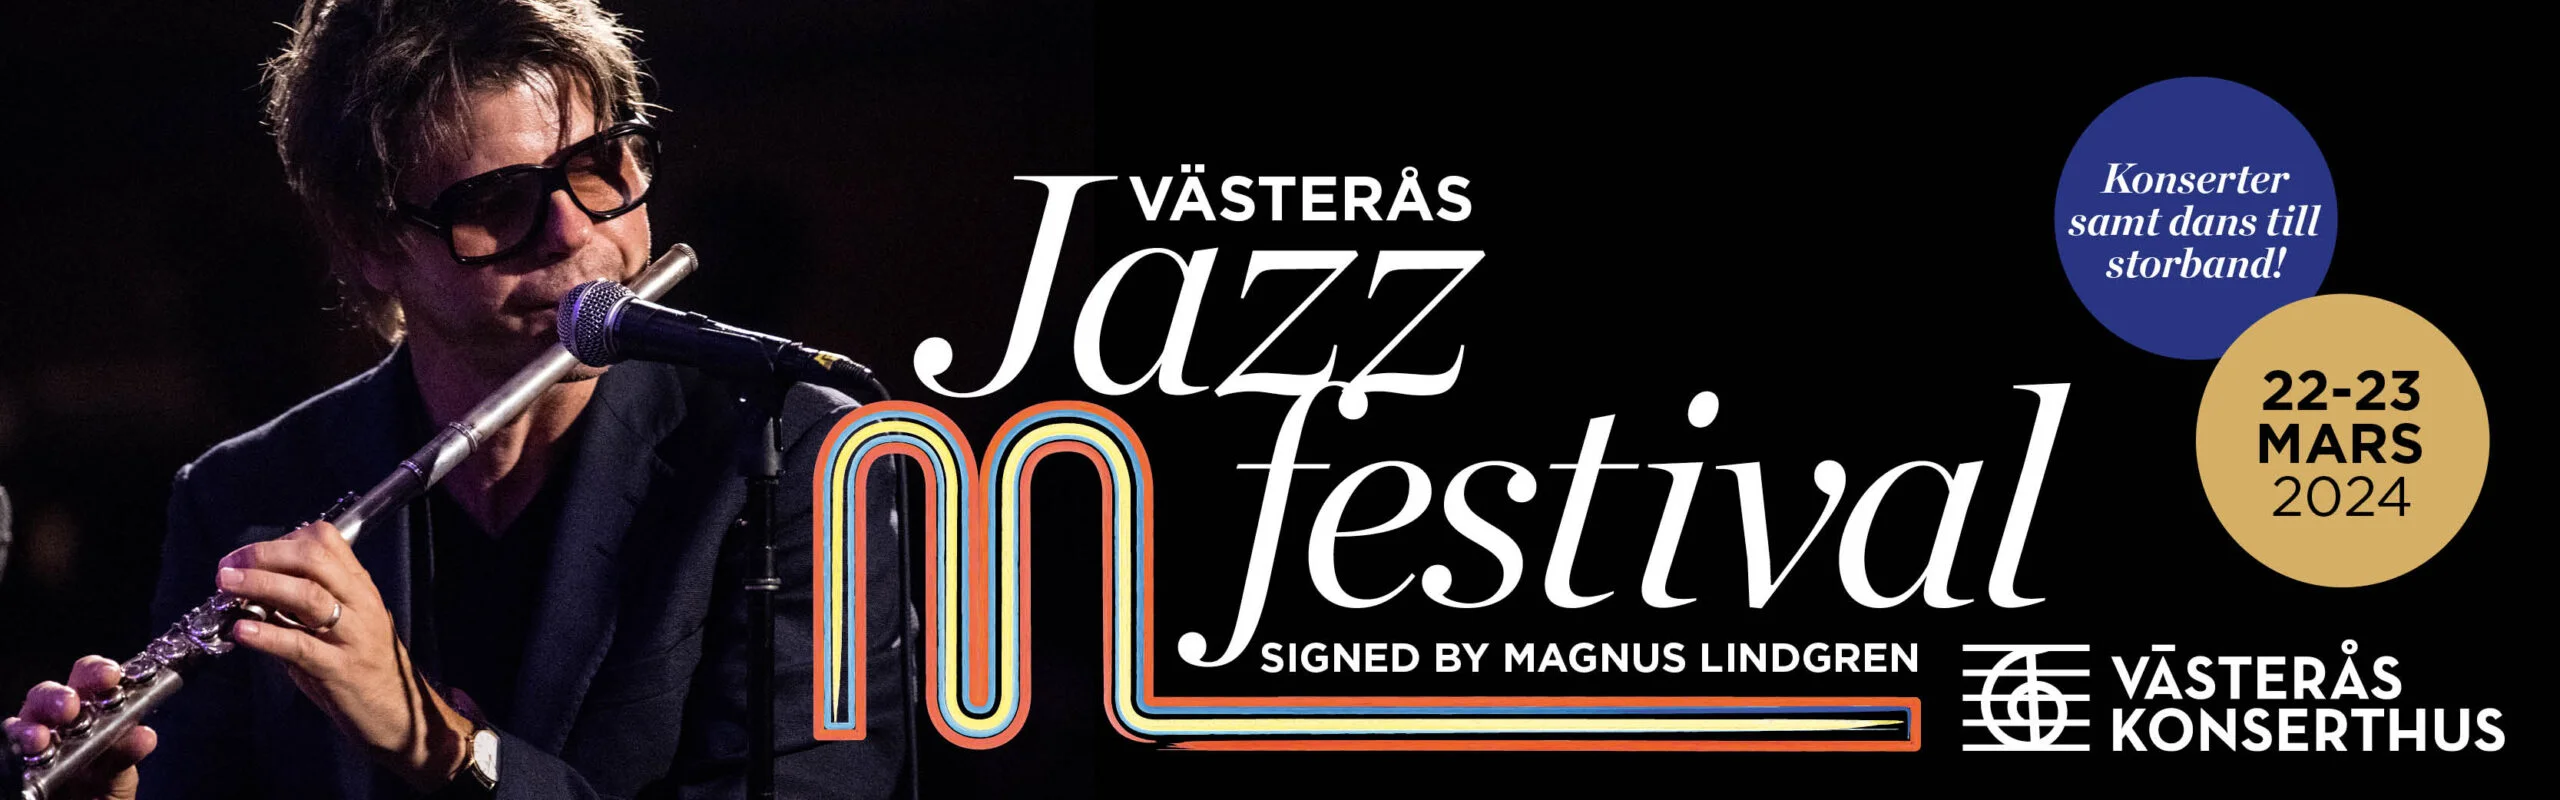 Annons: Västerås Jazz Festival